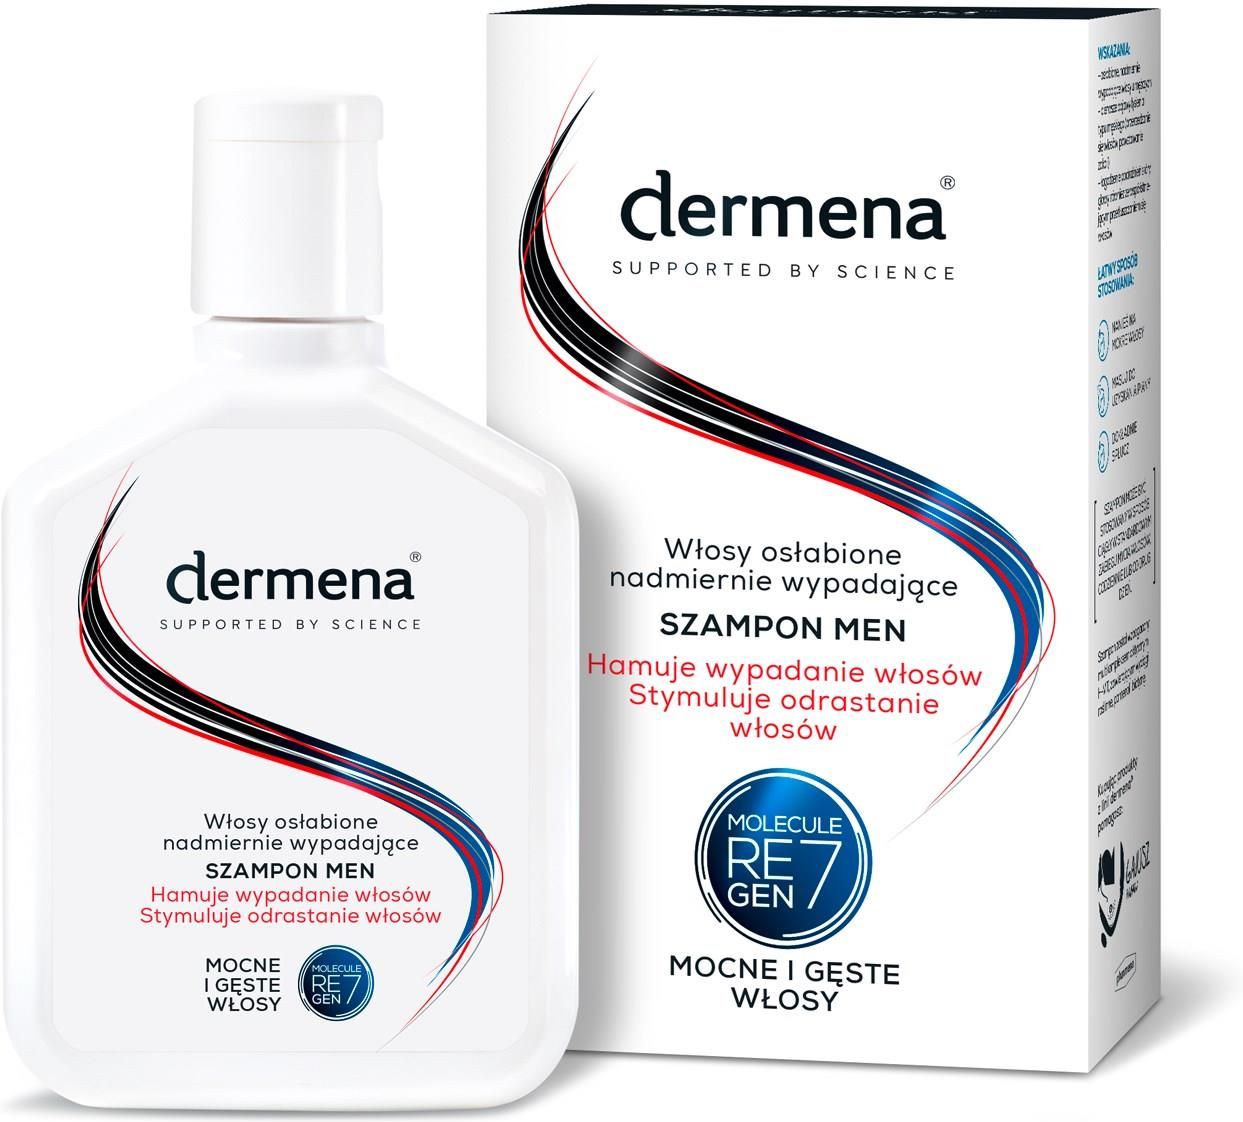 szampon repair dermena opinie